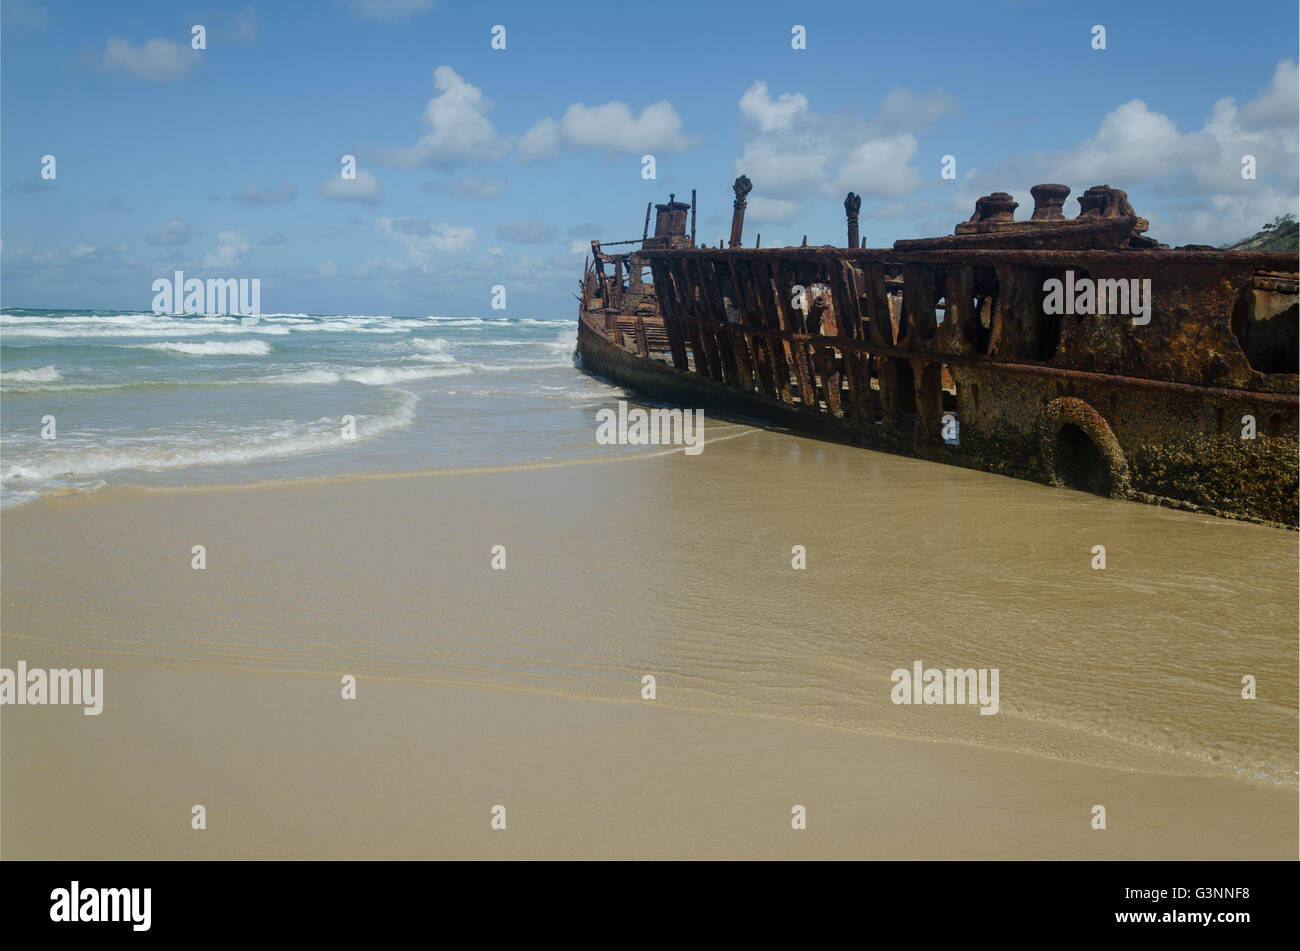 Impresionante SS Maheno naufragio lujo descansando en la playa en el claro cielo azul del día Foto de stock